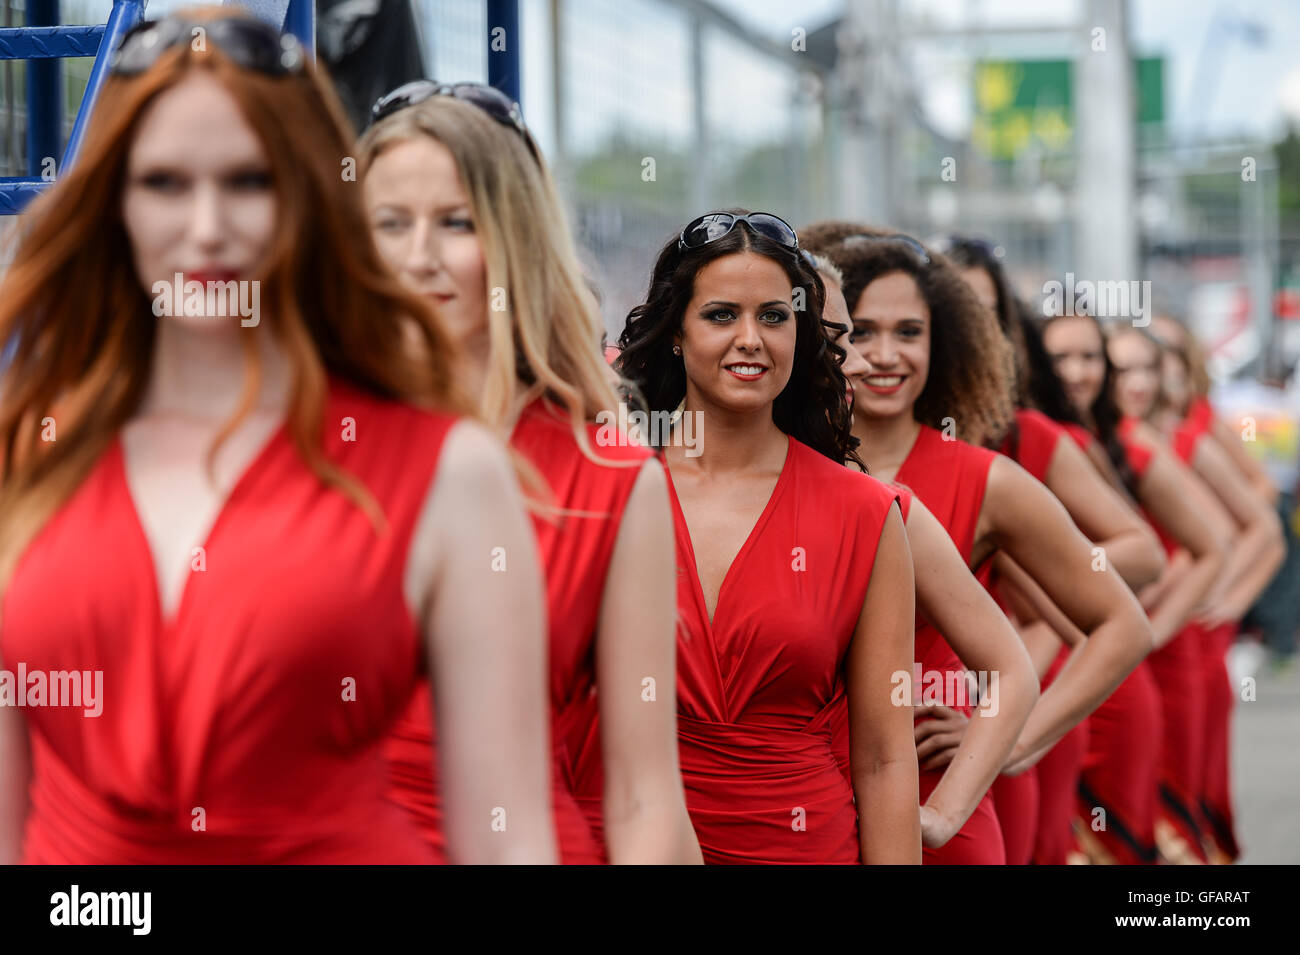 Hockenheim, Allemagne. 30 juillet, 2016. Grid girls stand après le qualificatif sur le circuit d'Hockenheim à Hockenheim, Allemagne, 30 juillet 2016. Le Grand Prix d'Allemagne a lieu le 31 juillet 2016. Photo : WOLFRAM/KASTLdpa Alamy Live News Banque D'Images